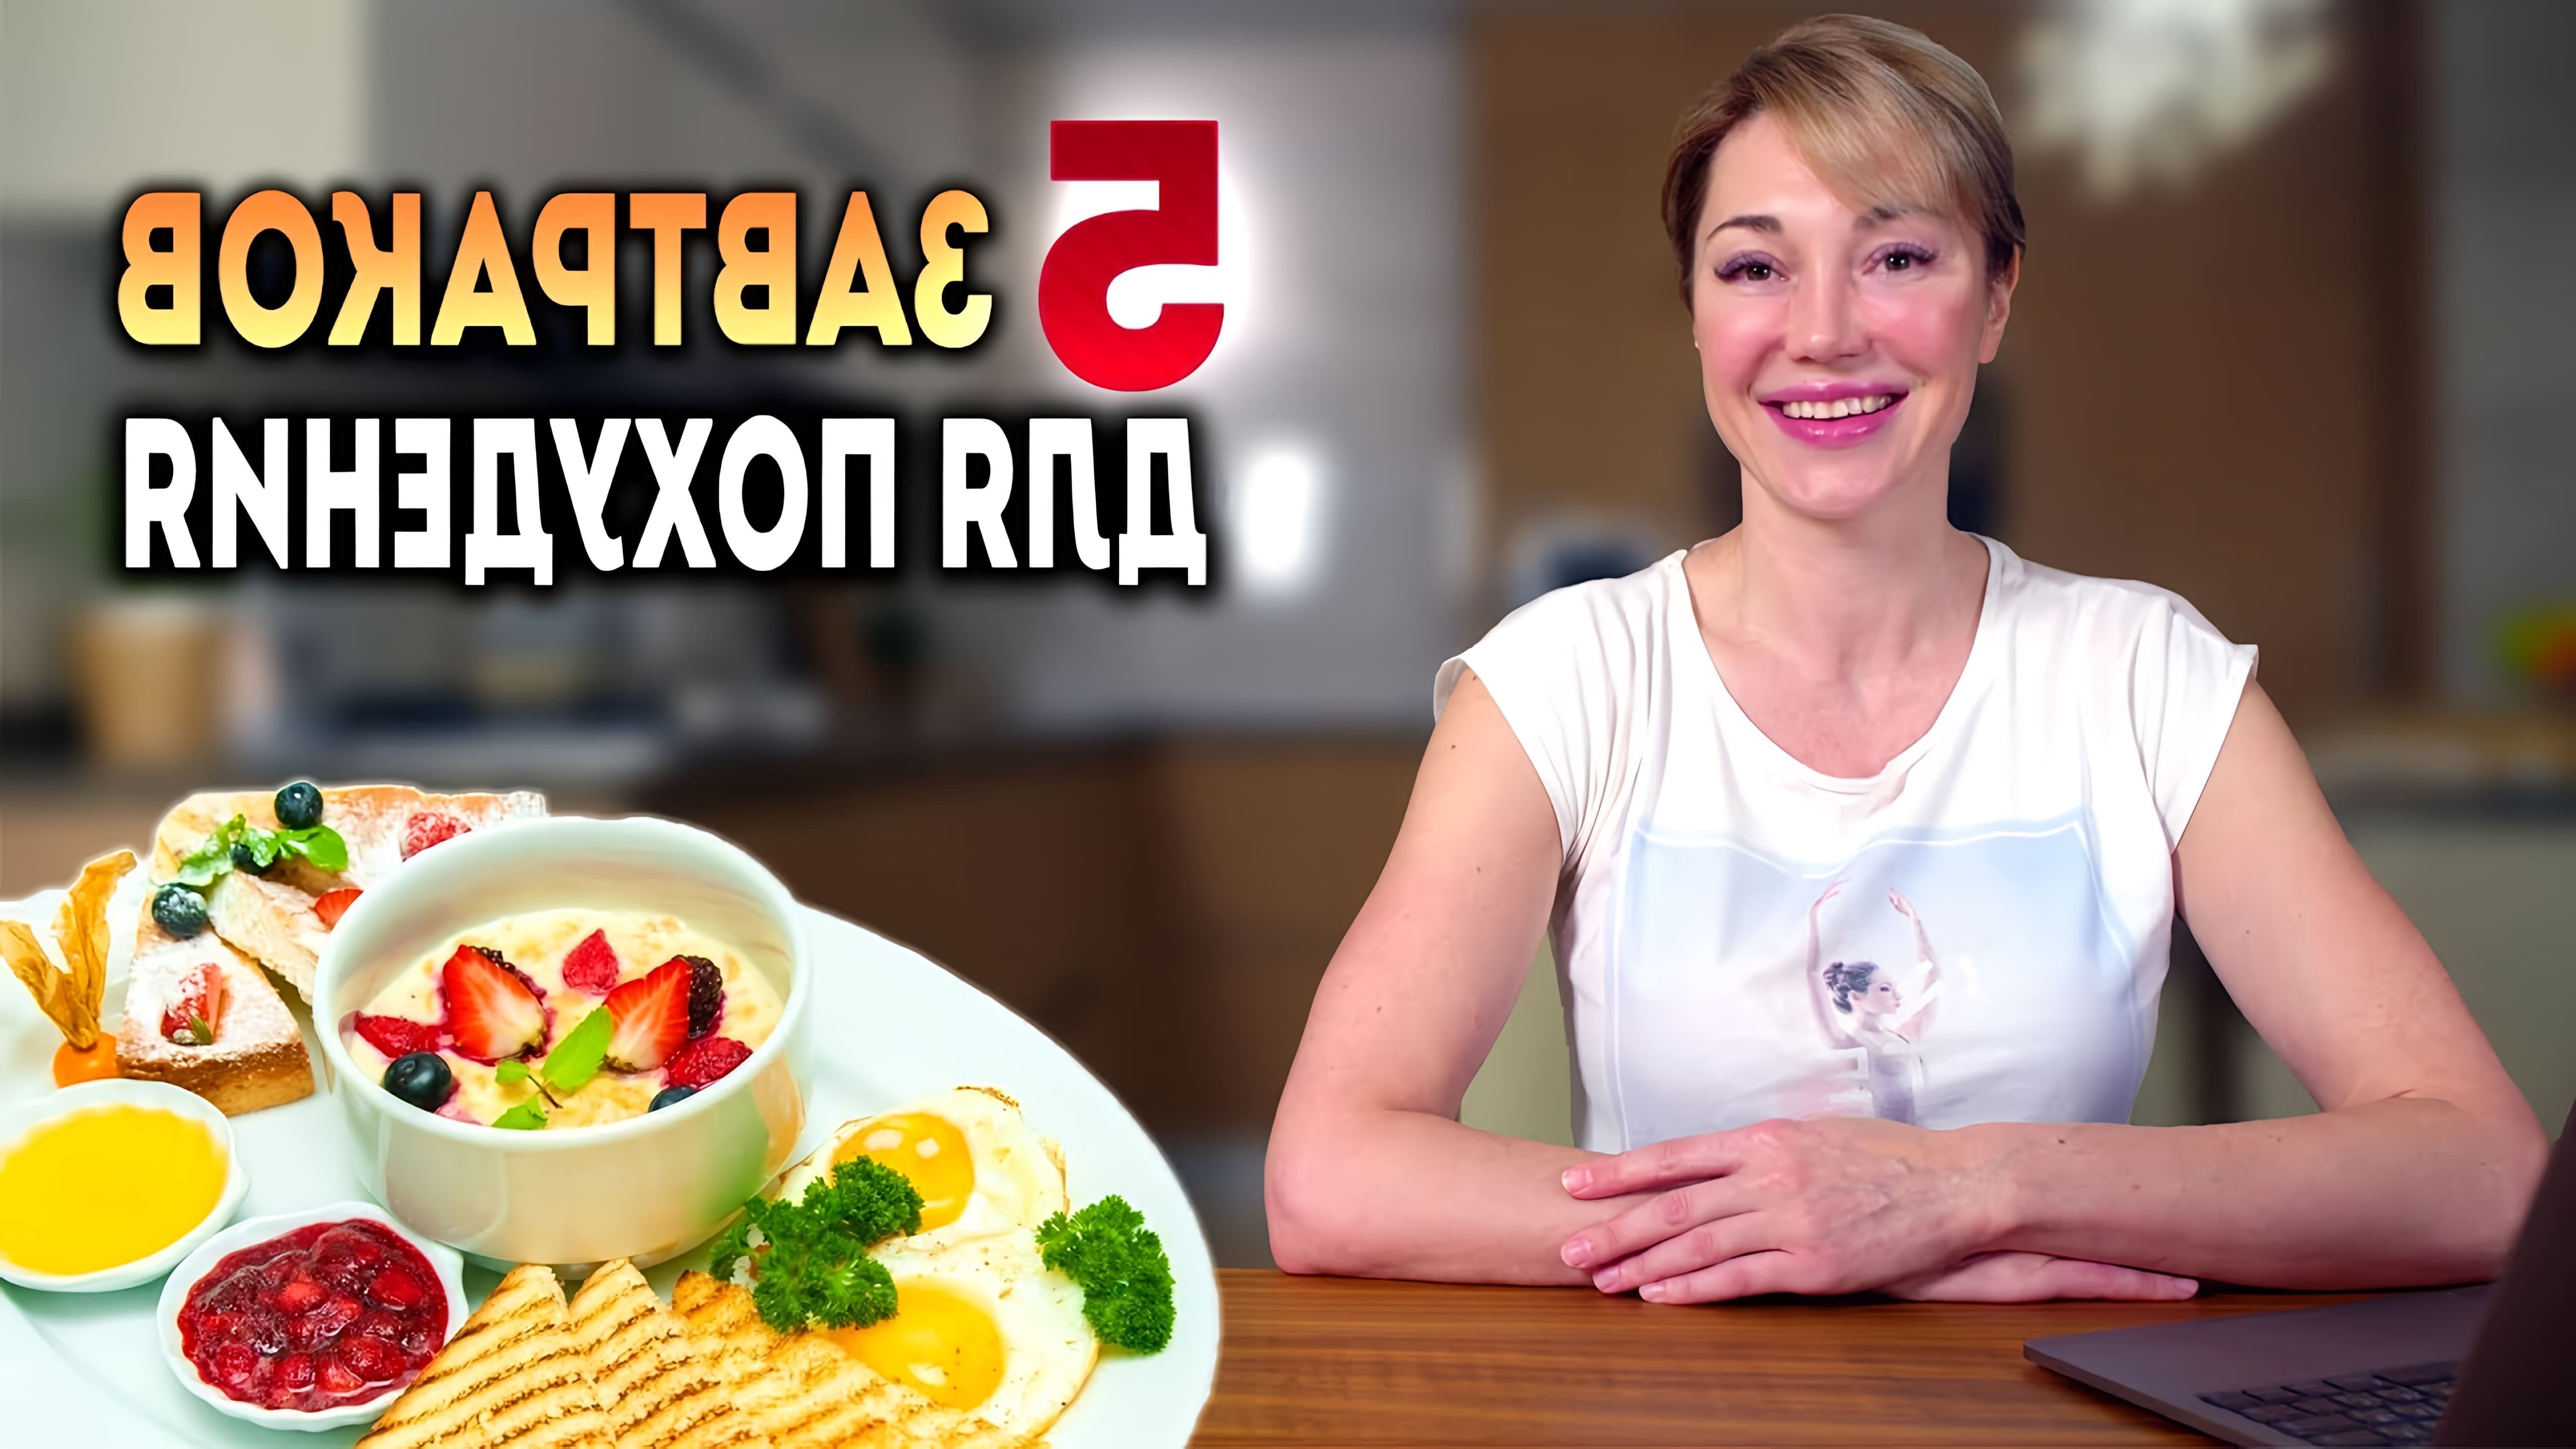 В этом видео Катя Медушкина рассказывает о 5 полезных завтраках, которые помогут похудеть